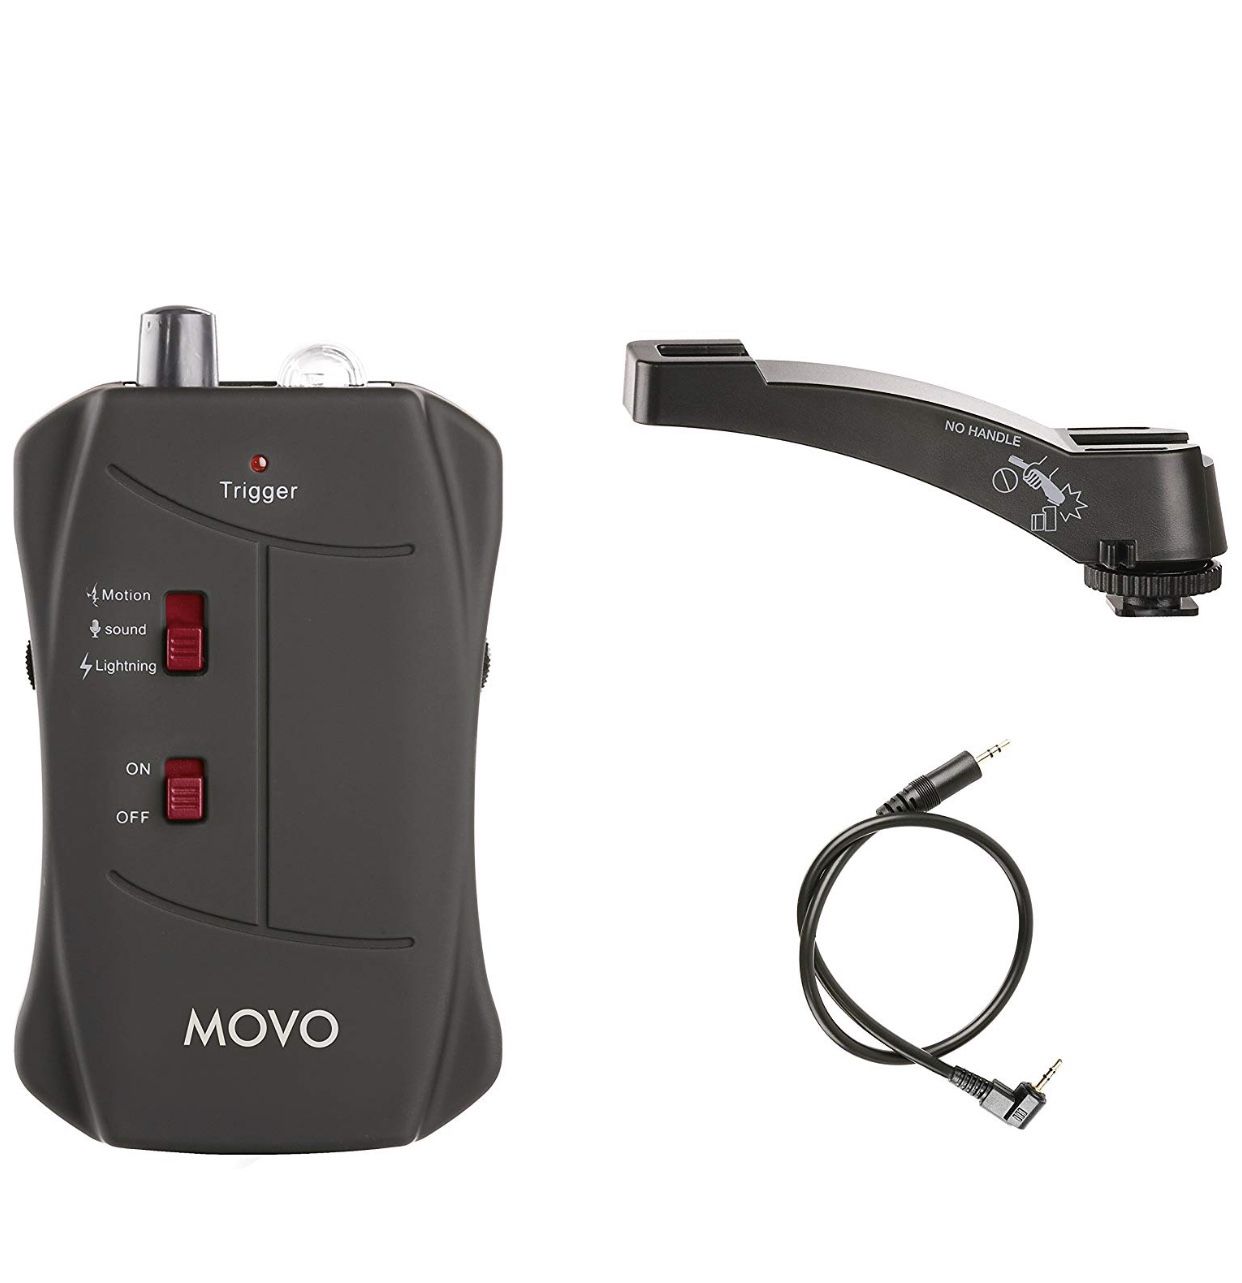 MOVO DSLR Lightning, Sound, Motion trigger remote